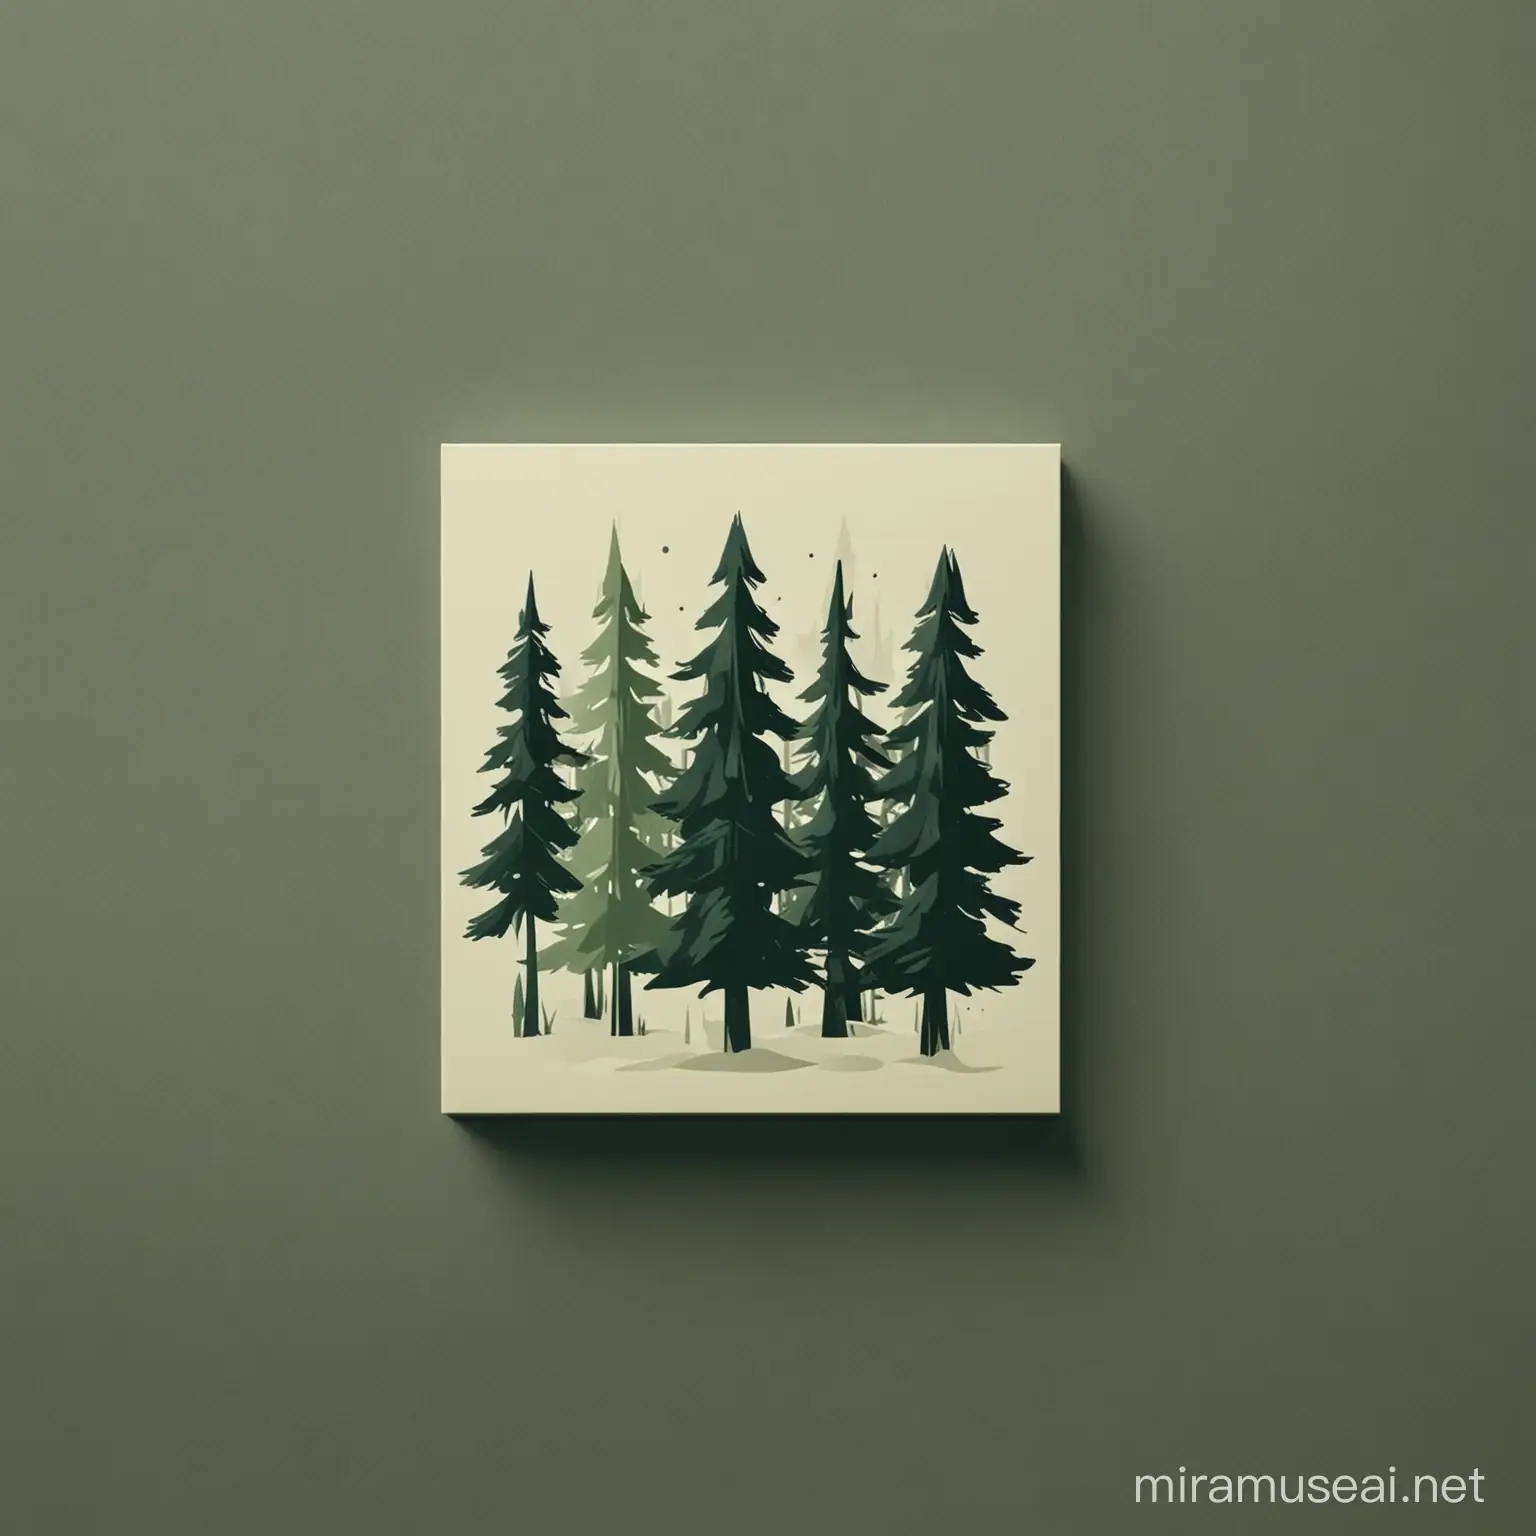 Logo moderno atractivo y minimalista; de un bosque de pinos en tonos verdes